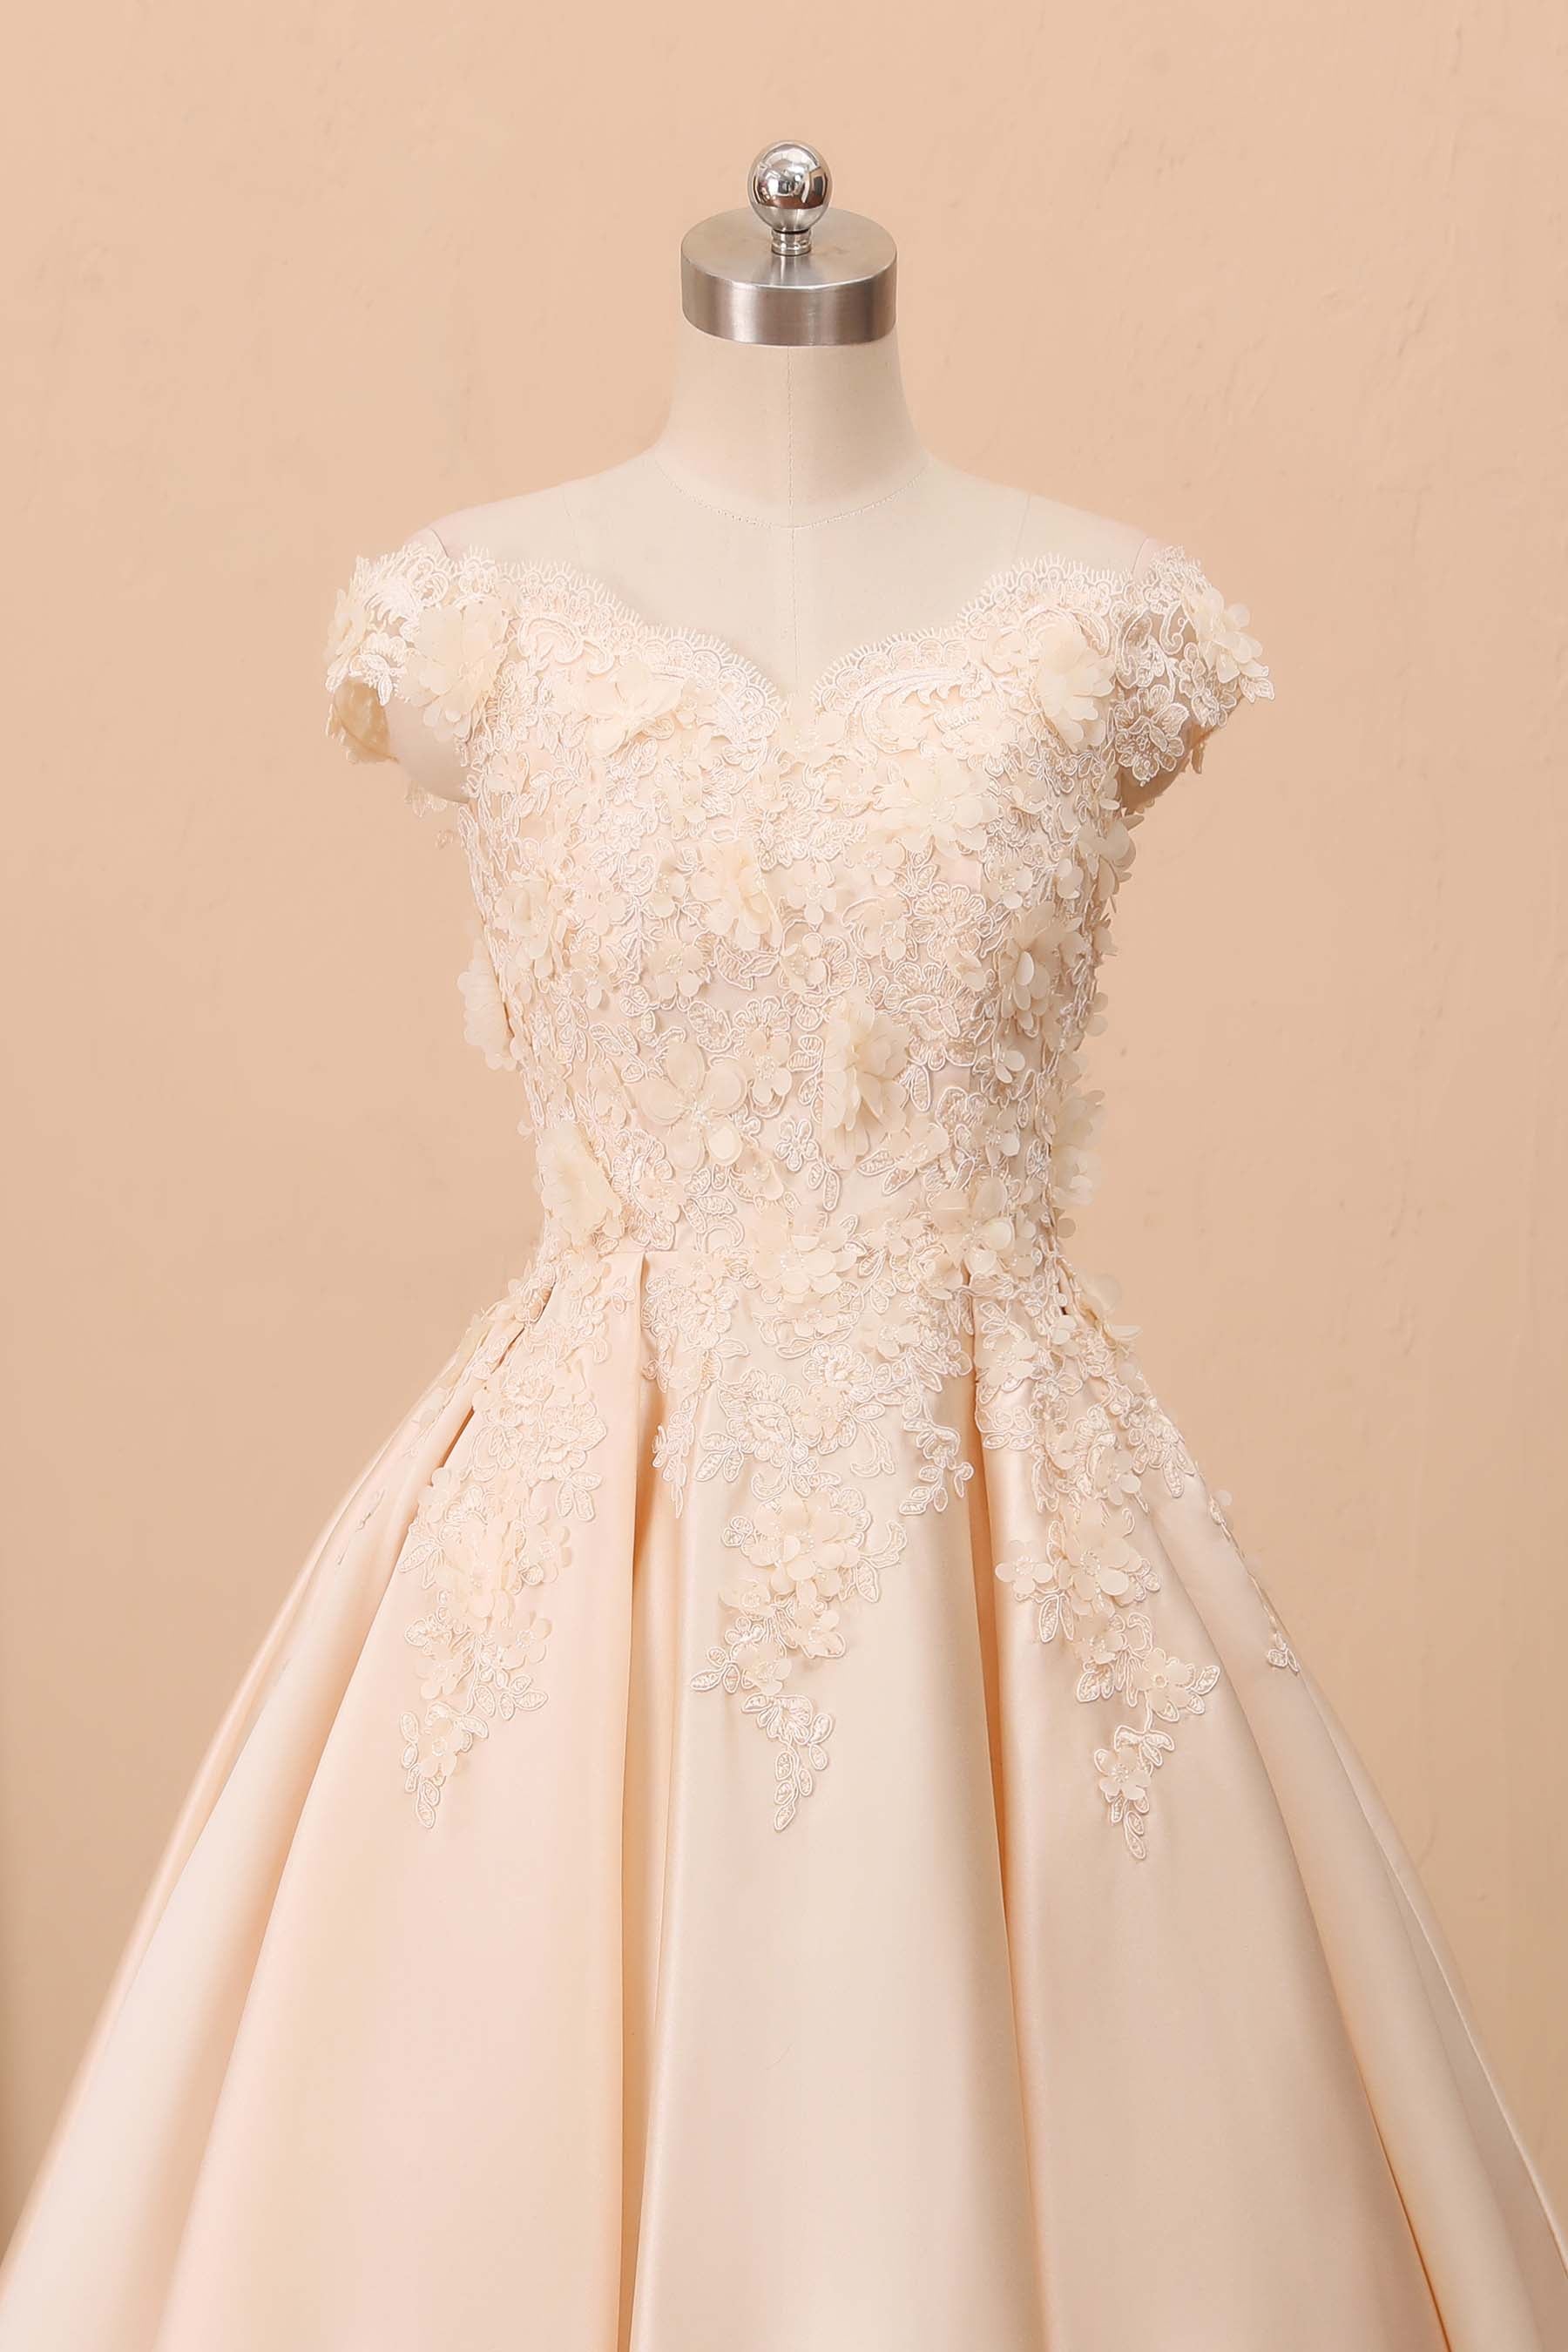 3D lace off-shoulder champagne wedding dress